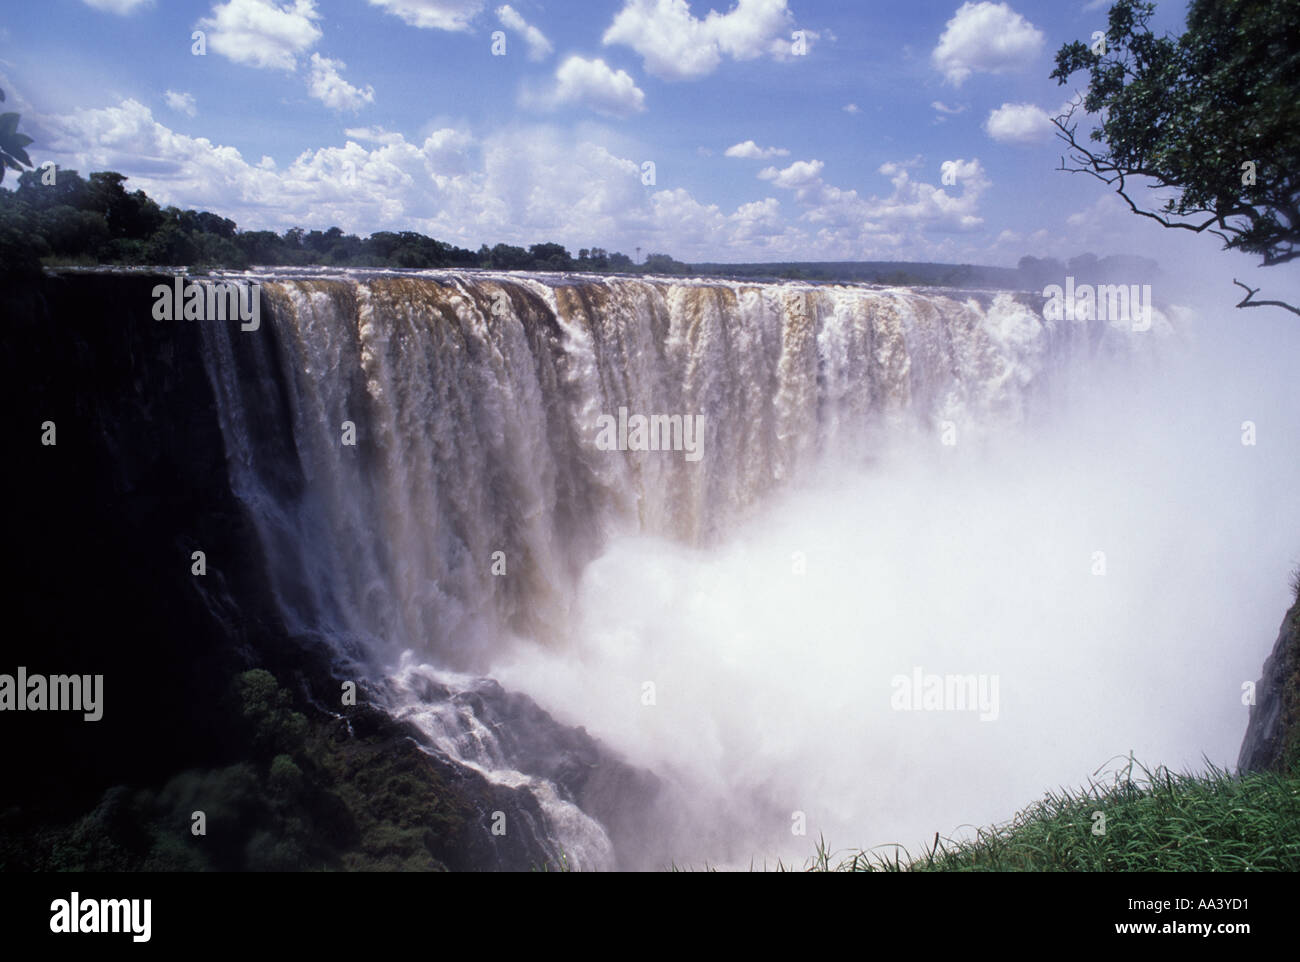 Victoria Falls Zambia/Zimbabwe border Stock Photo